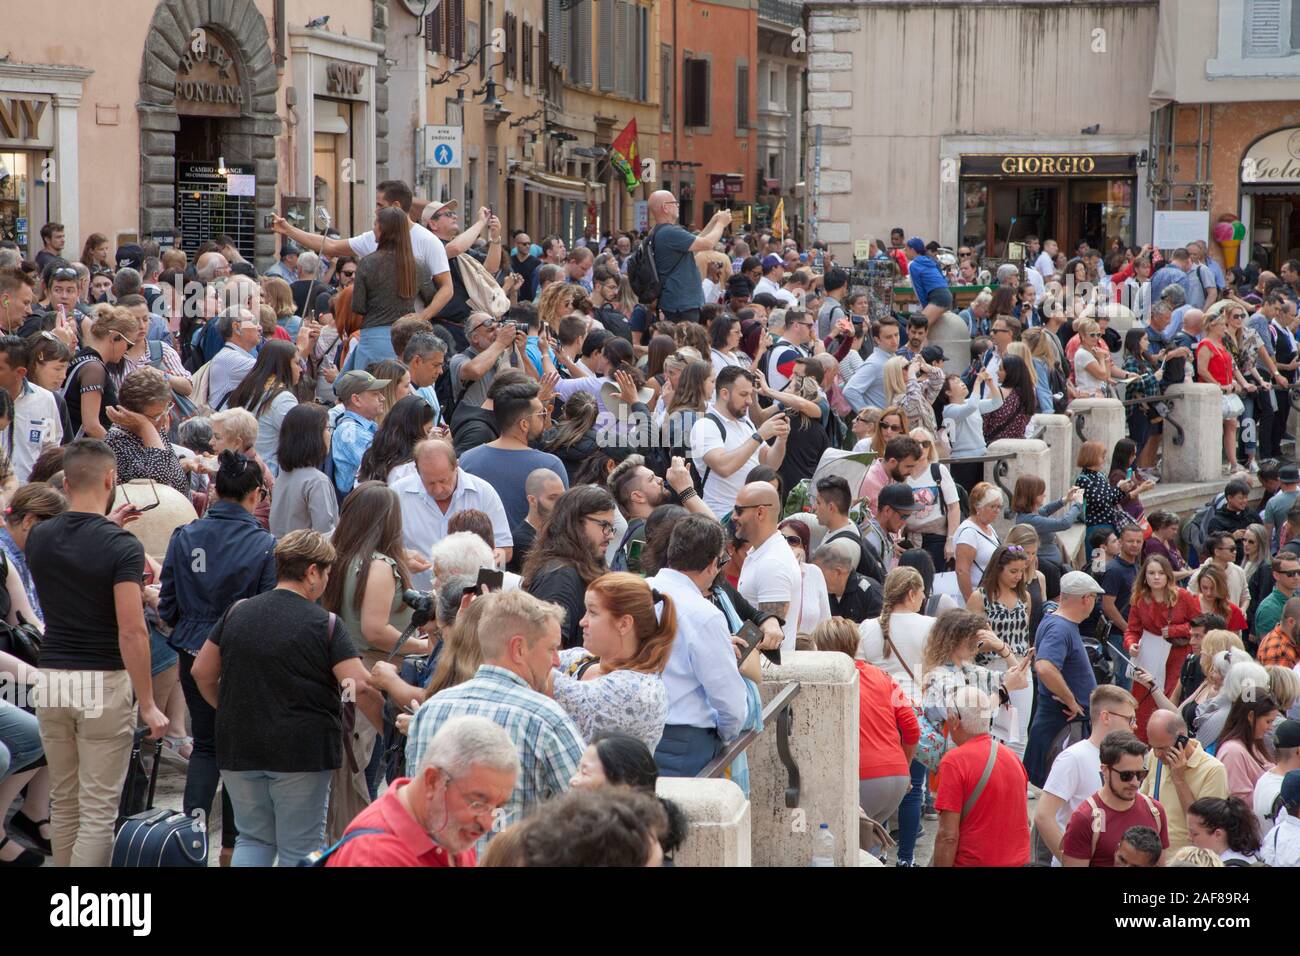 Folle immense presso la Fontana di Trevi a Roma prendere selfies e lanciare delle monete nella Fontana per fortuna. Sicurezza ora arrestare persone da seduto Foto Stock